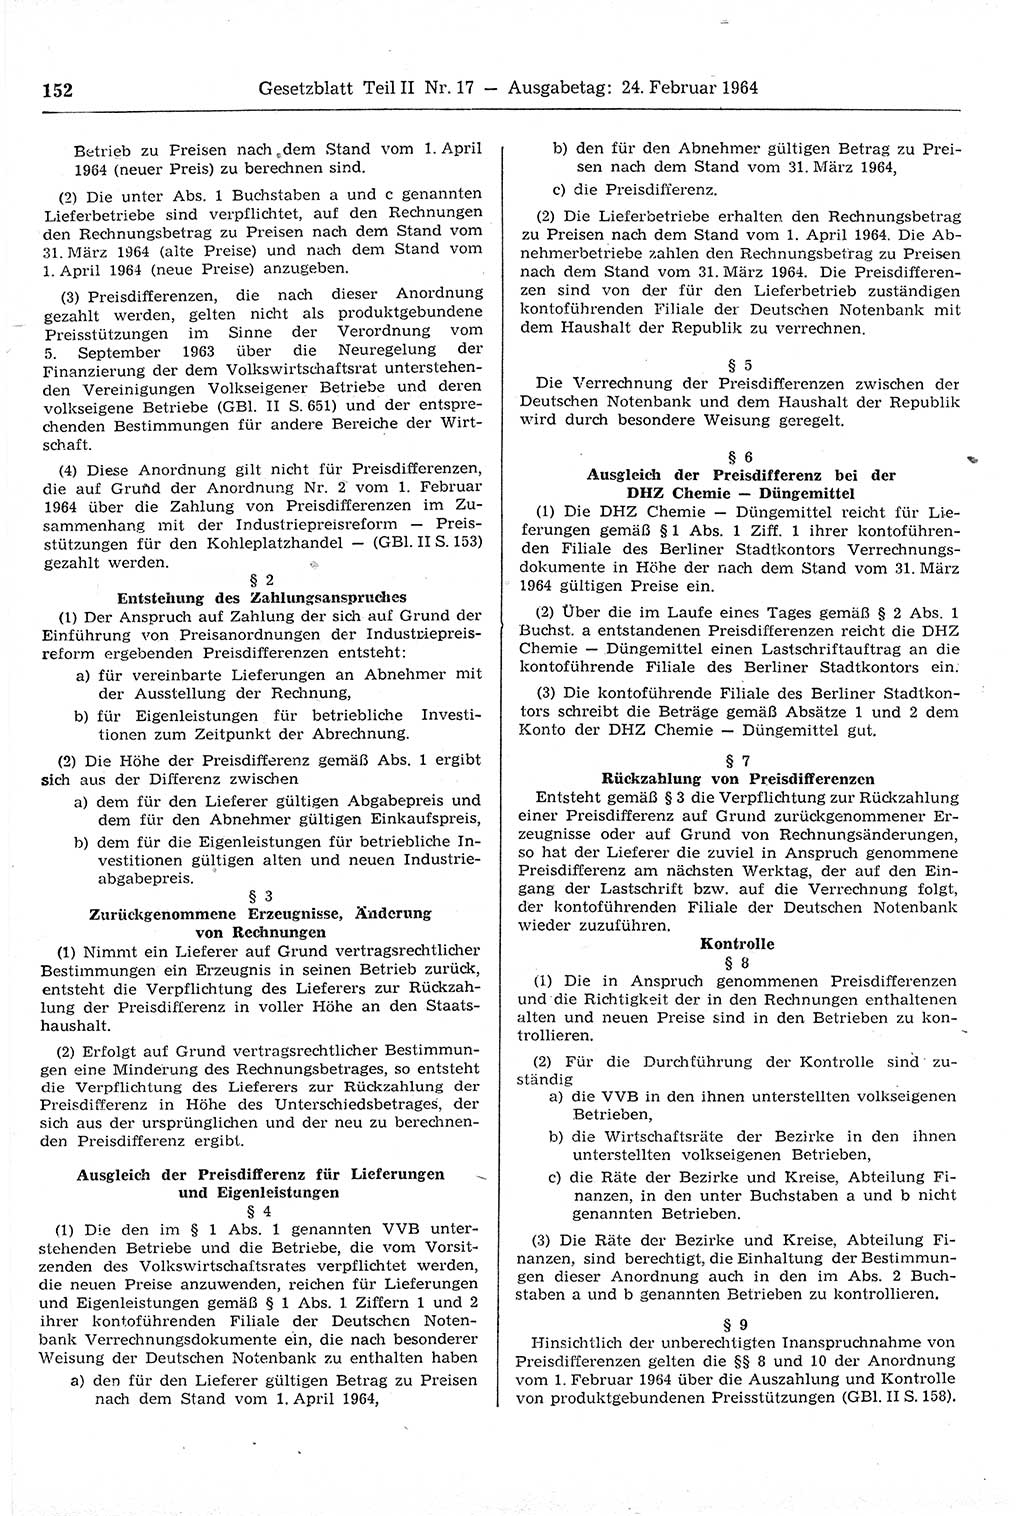 Gesetzblatt (GBl.) der Deutschen Demokratischen Republik (DDR) Teil ⅠⅠ 1964, Seite 152 (GBl. DDR ⅠⅠ 1964, S. 152)